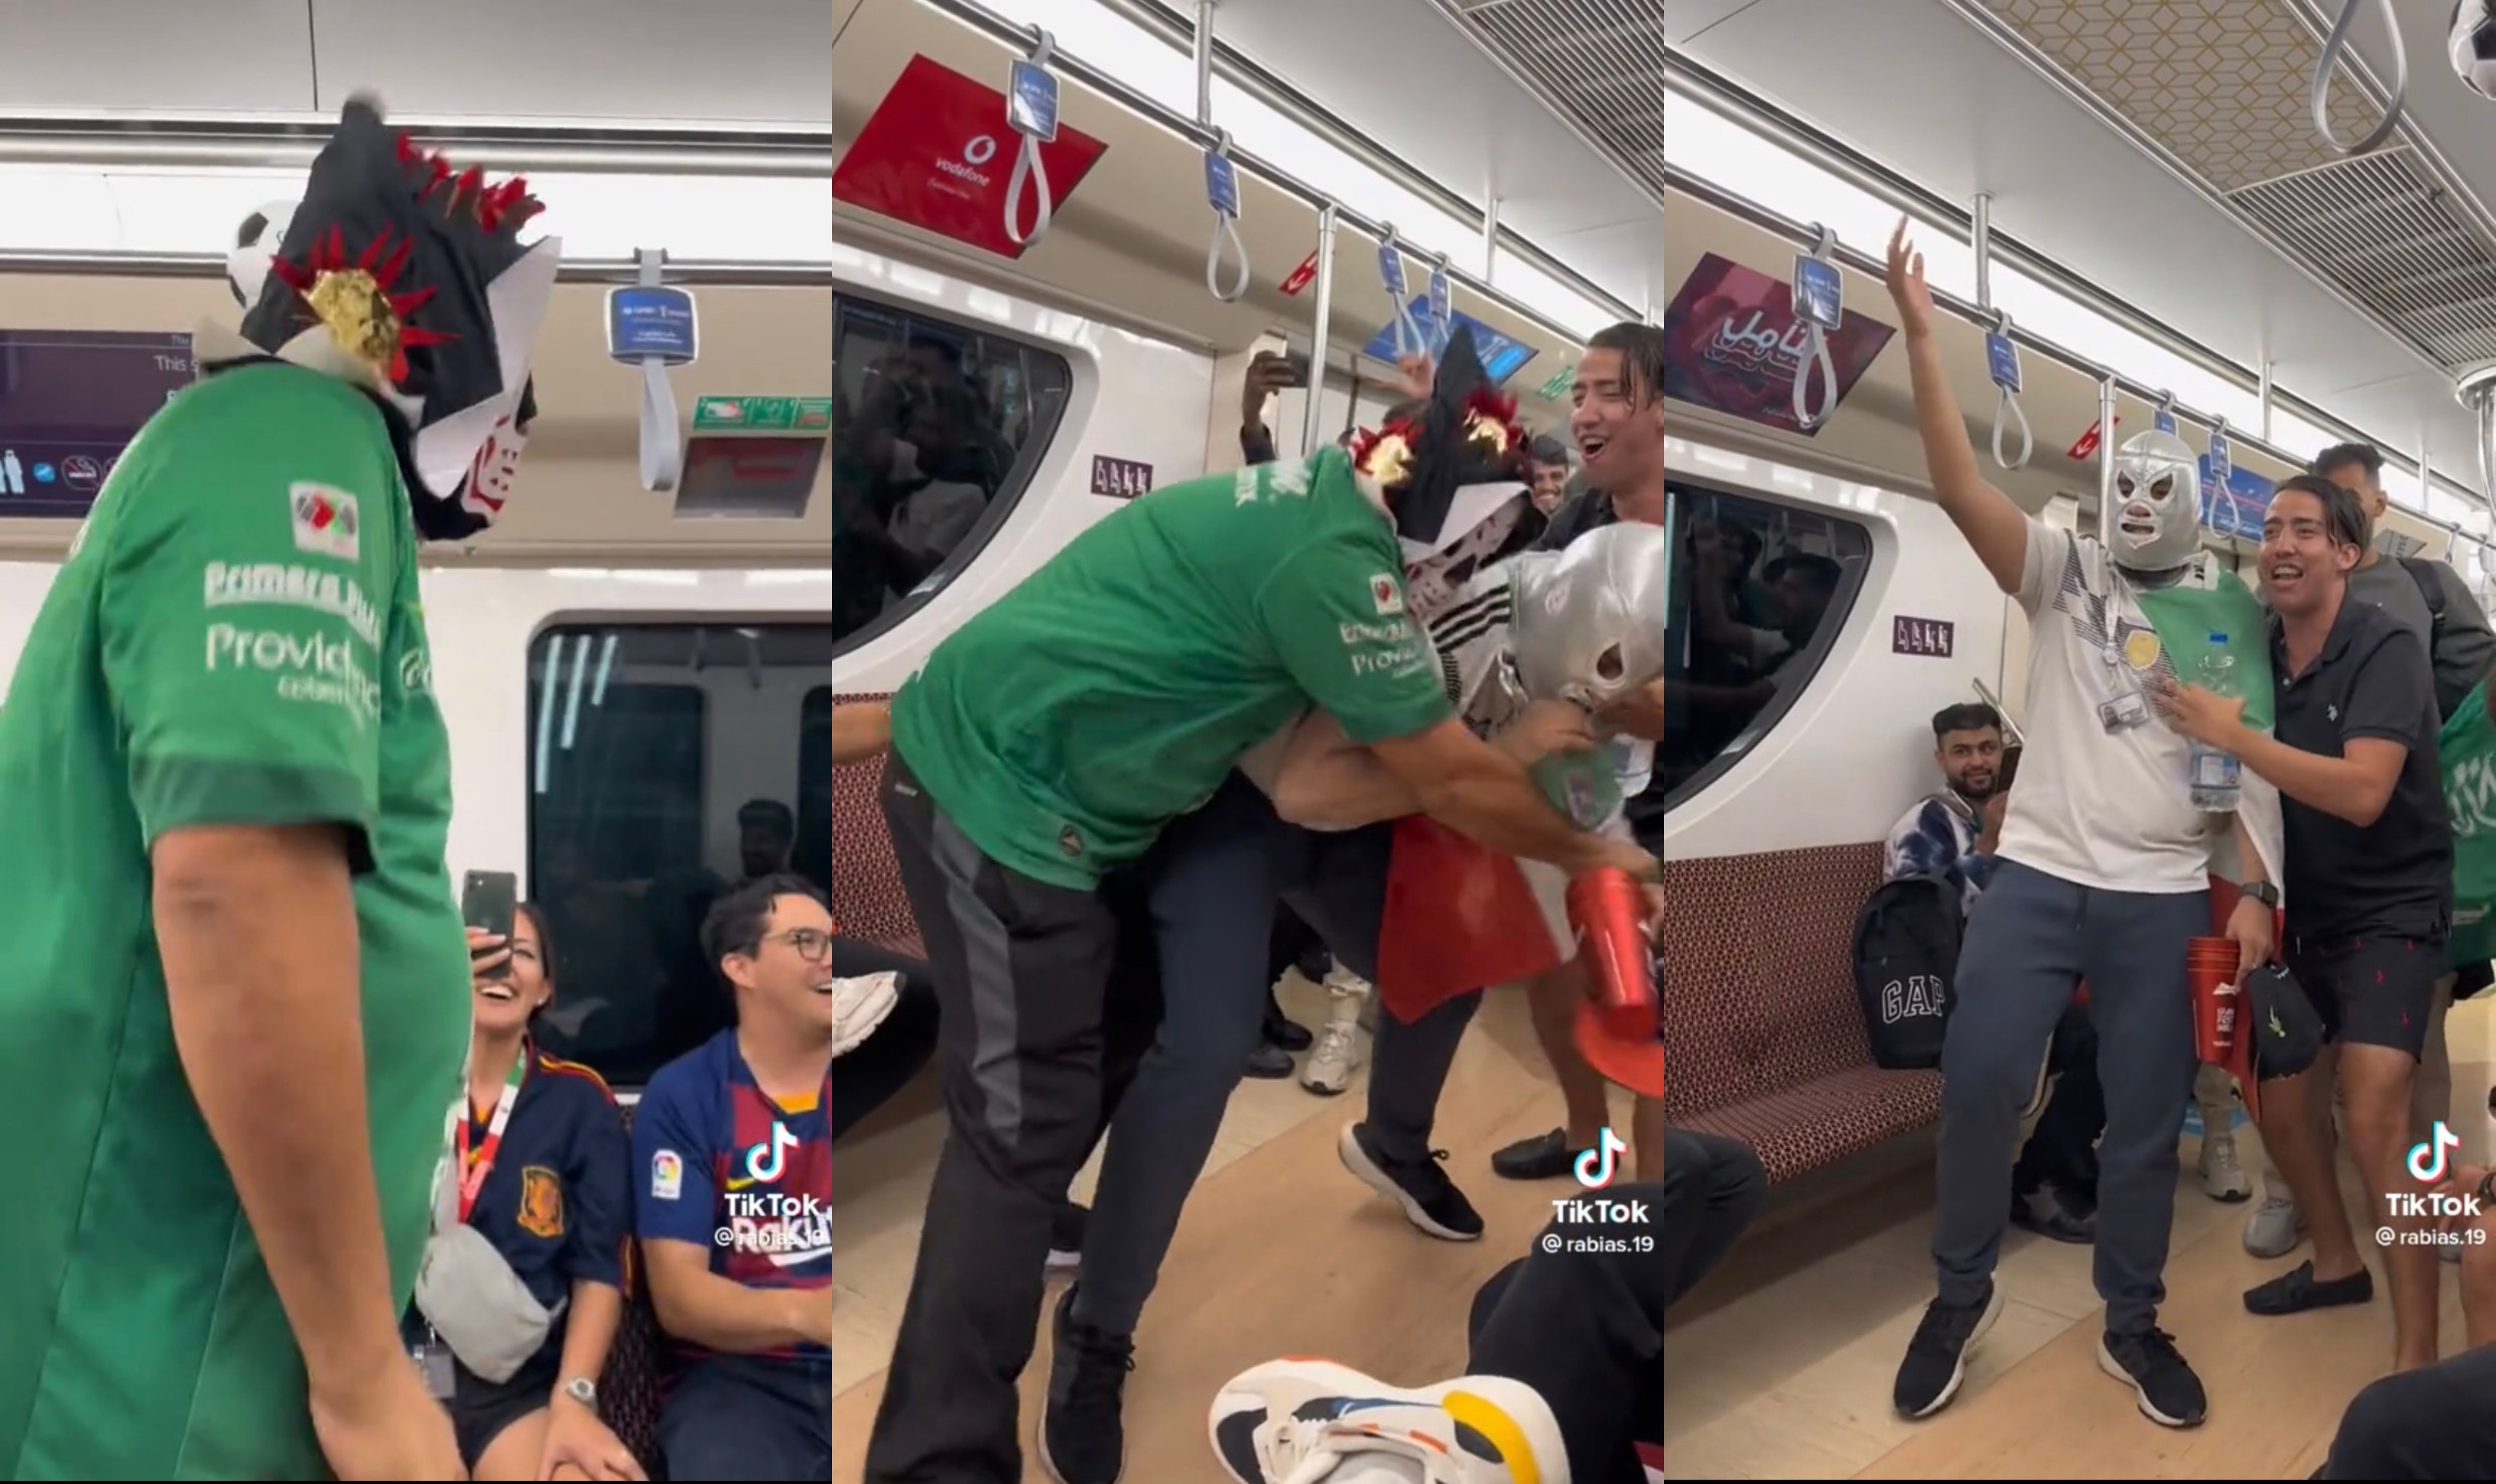 ¡De 2 a 3 caídas sin límite de tiempo! Así fue el show de lucha libre que organizaron mexicanos en el metro de Qatar